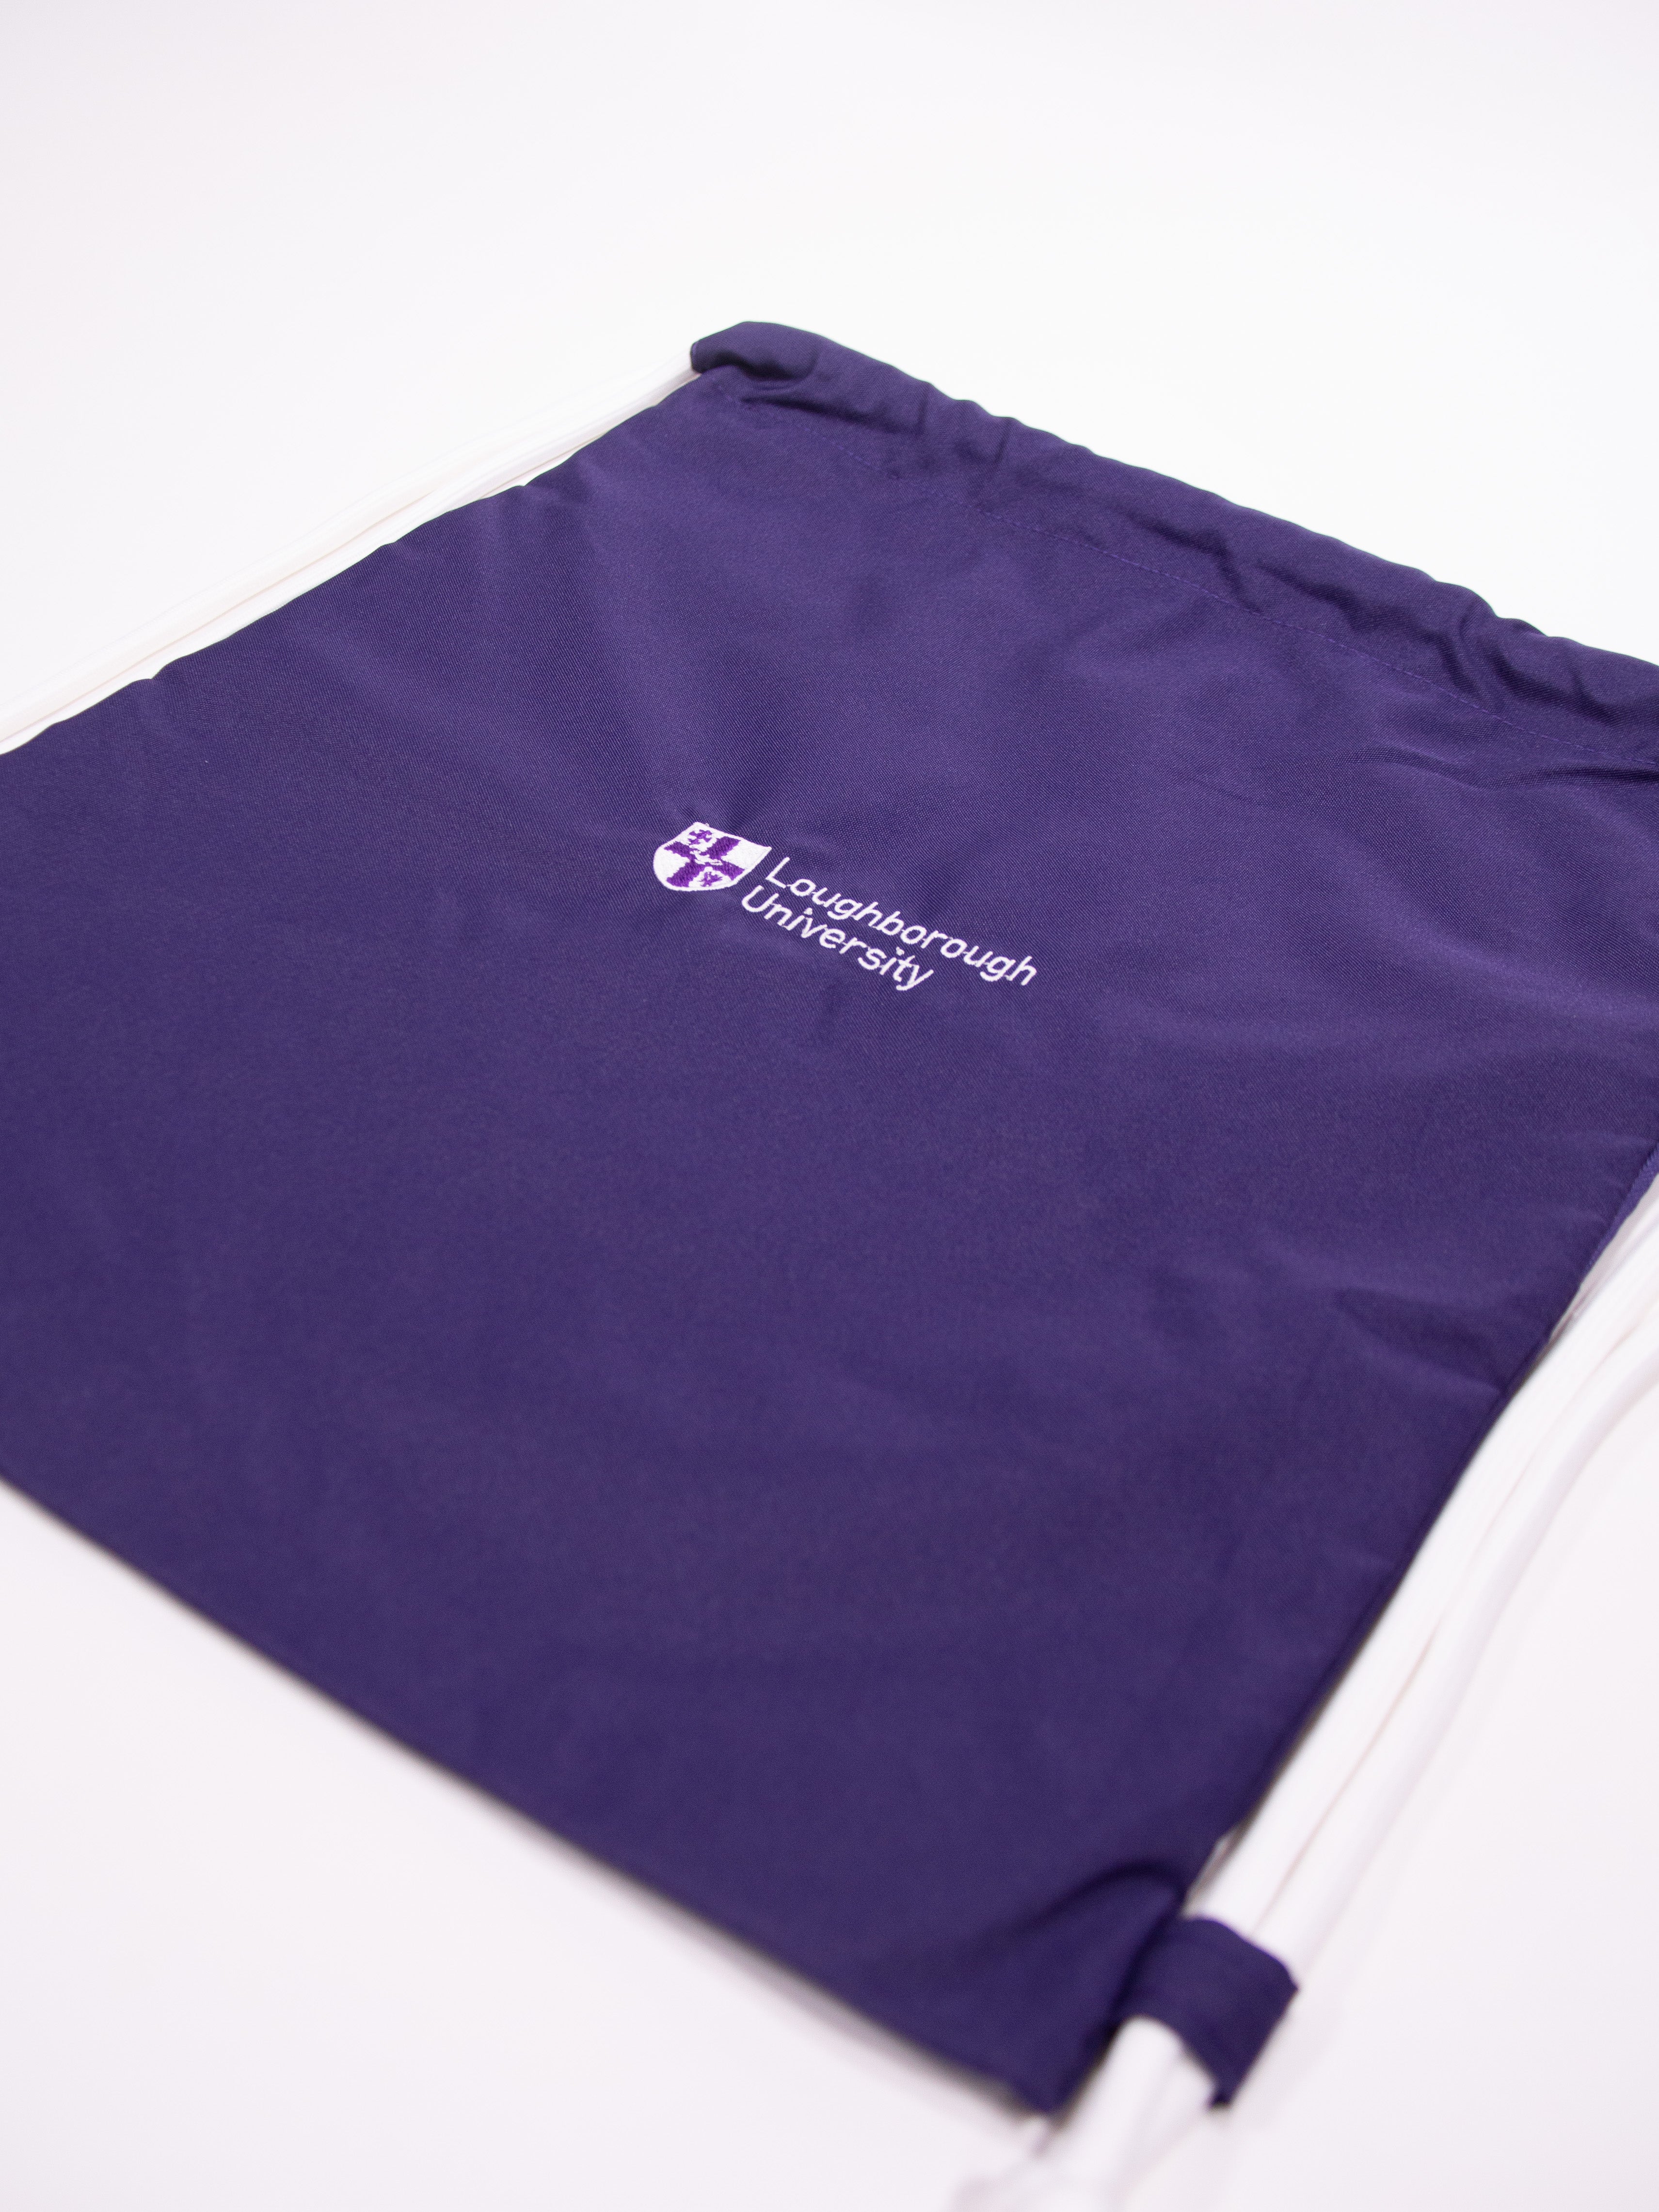 Drawstring Bag - Purple/White